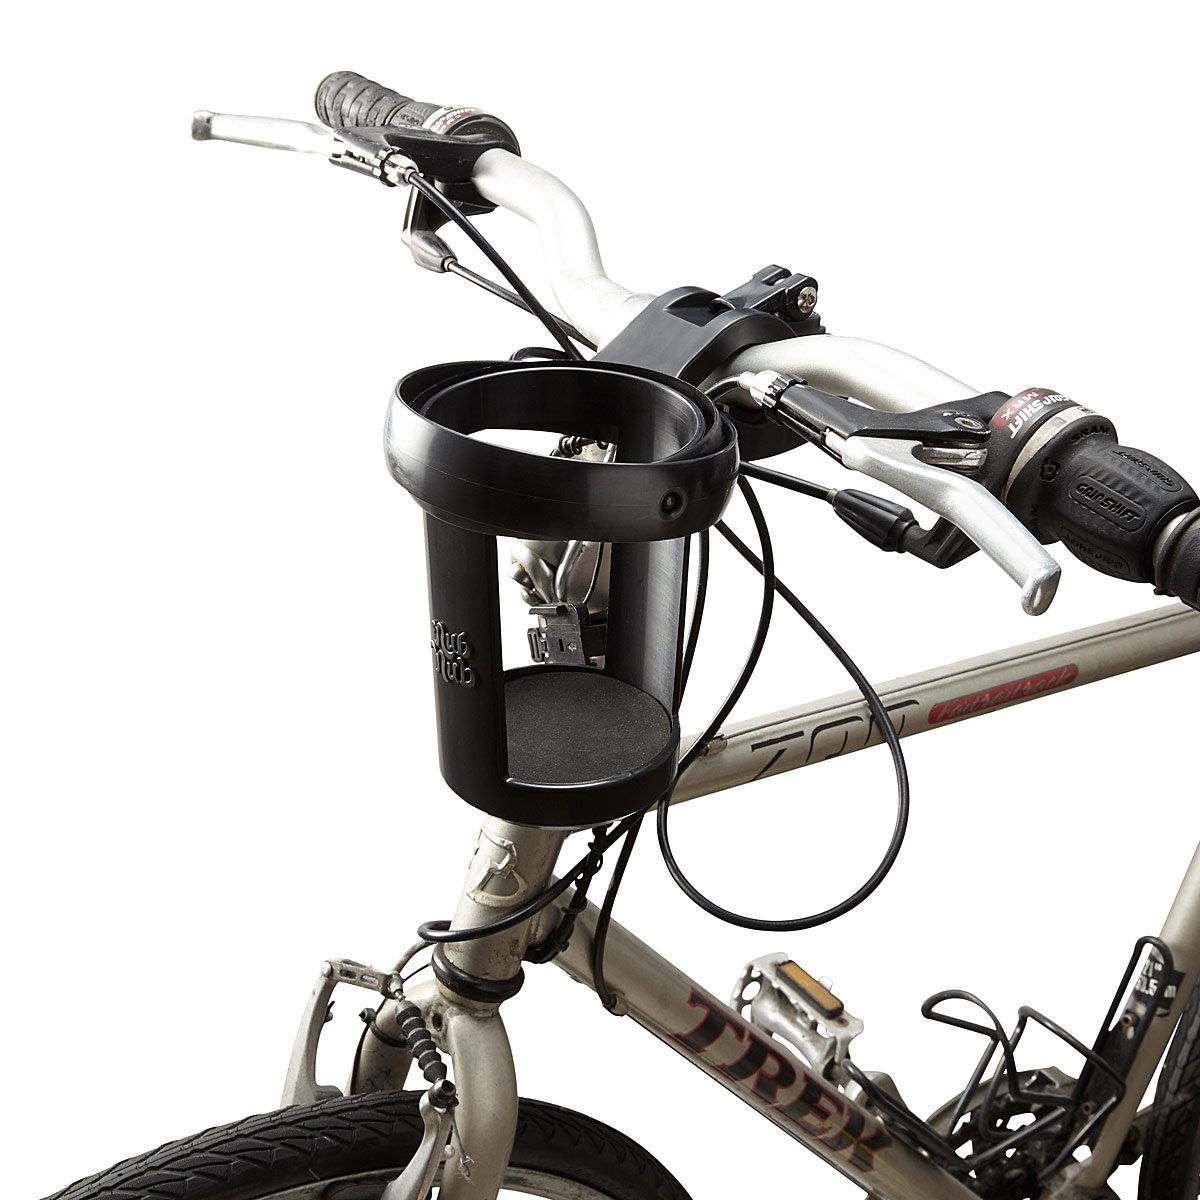 Upright Bike Cup Holder upright bike cup holder